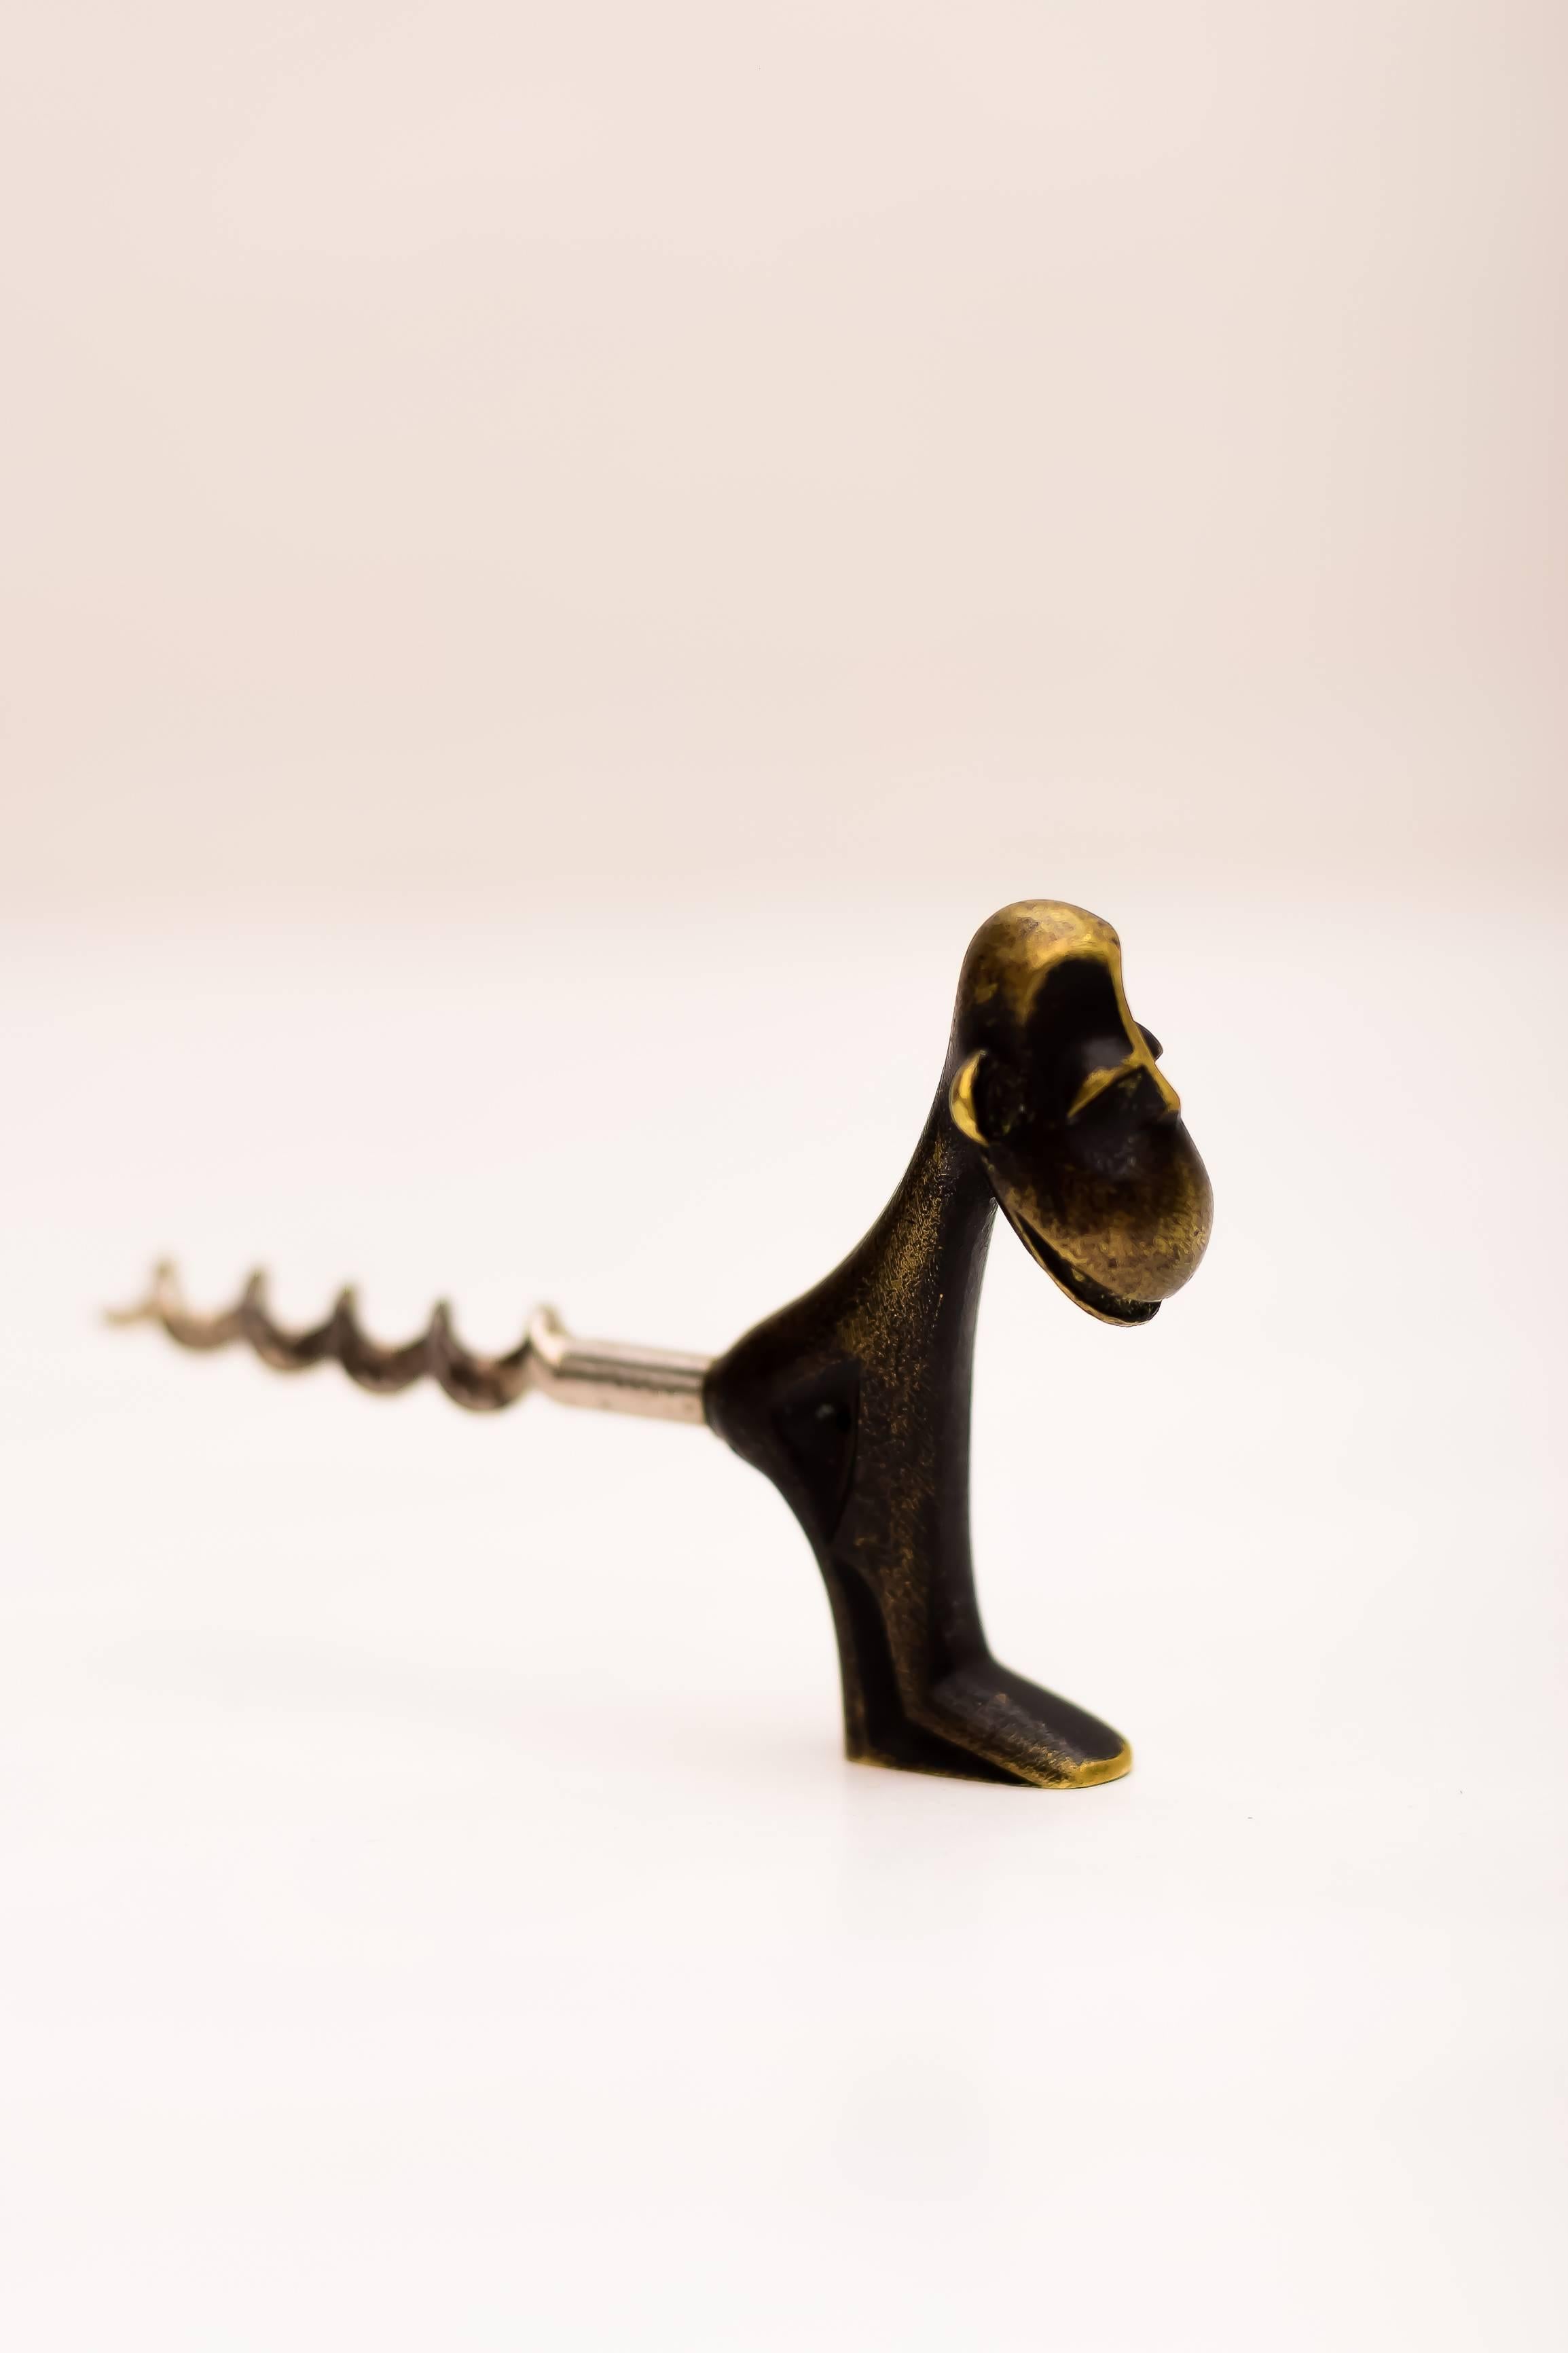 Austrian Monkey Cork Screw by Richard Rohac, Vienna, 1950s For Sale